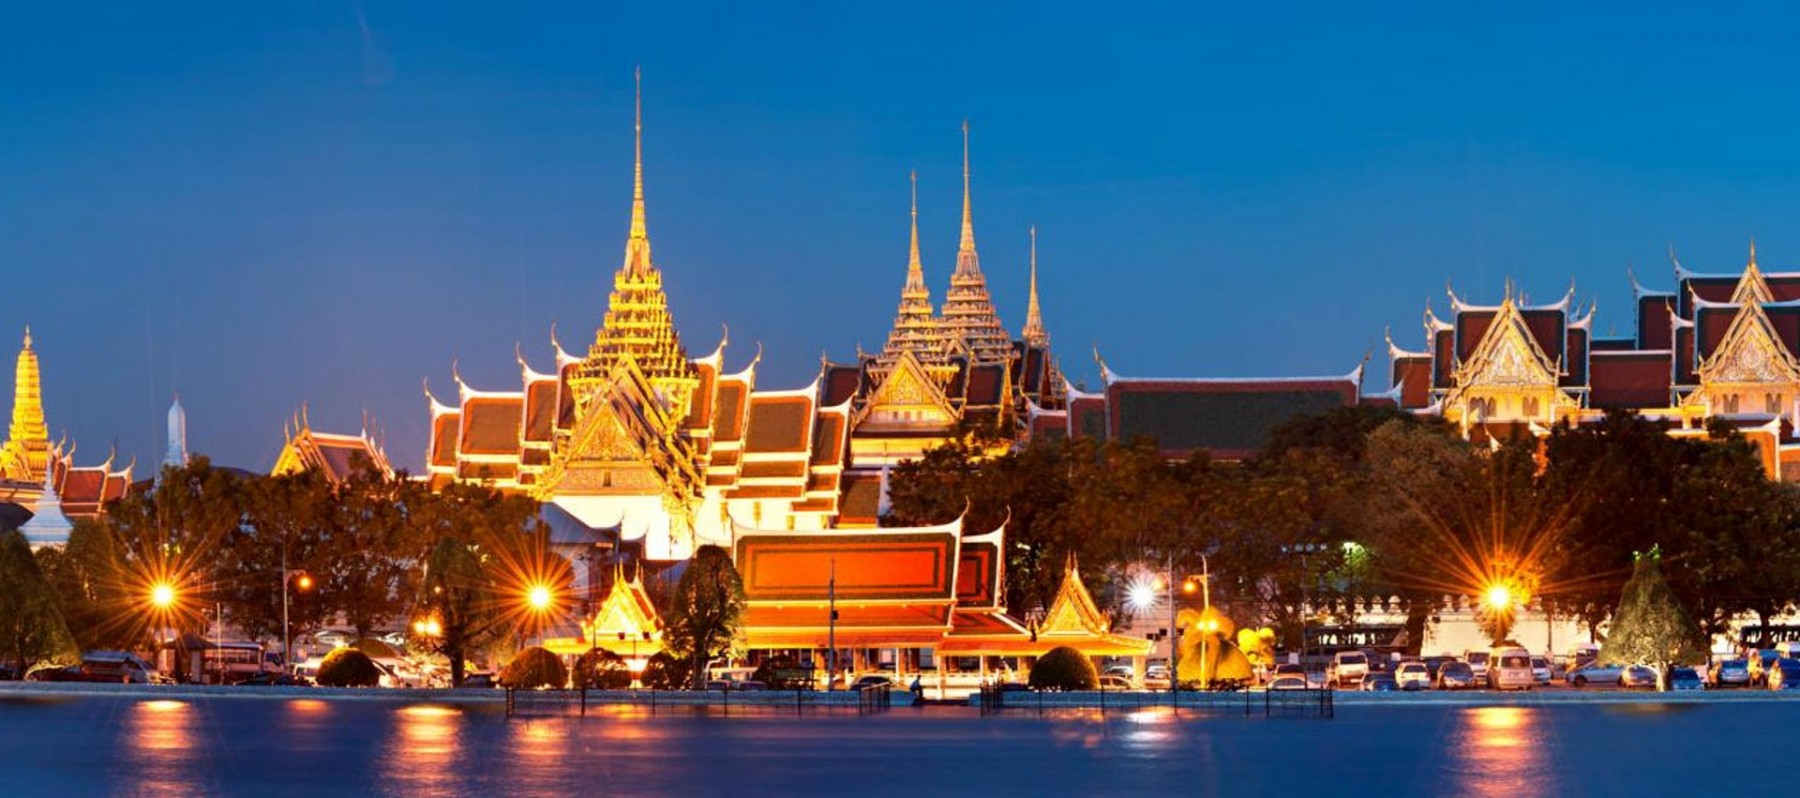 دليل السياحه في  القصر الكبير فى بانكوك تايلاند | السياحة فى القصر الكبير فى بانكوك